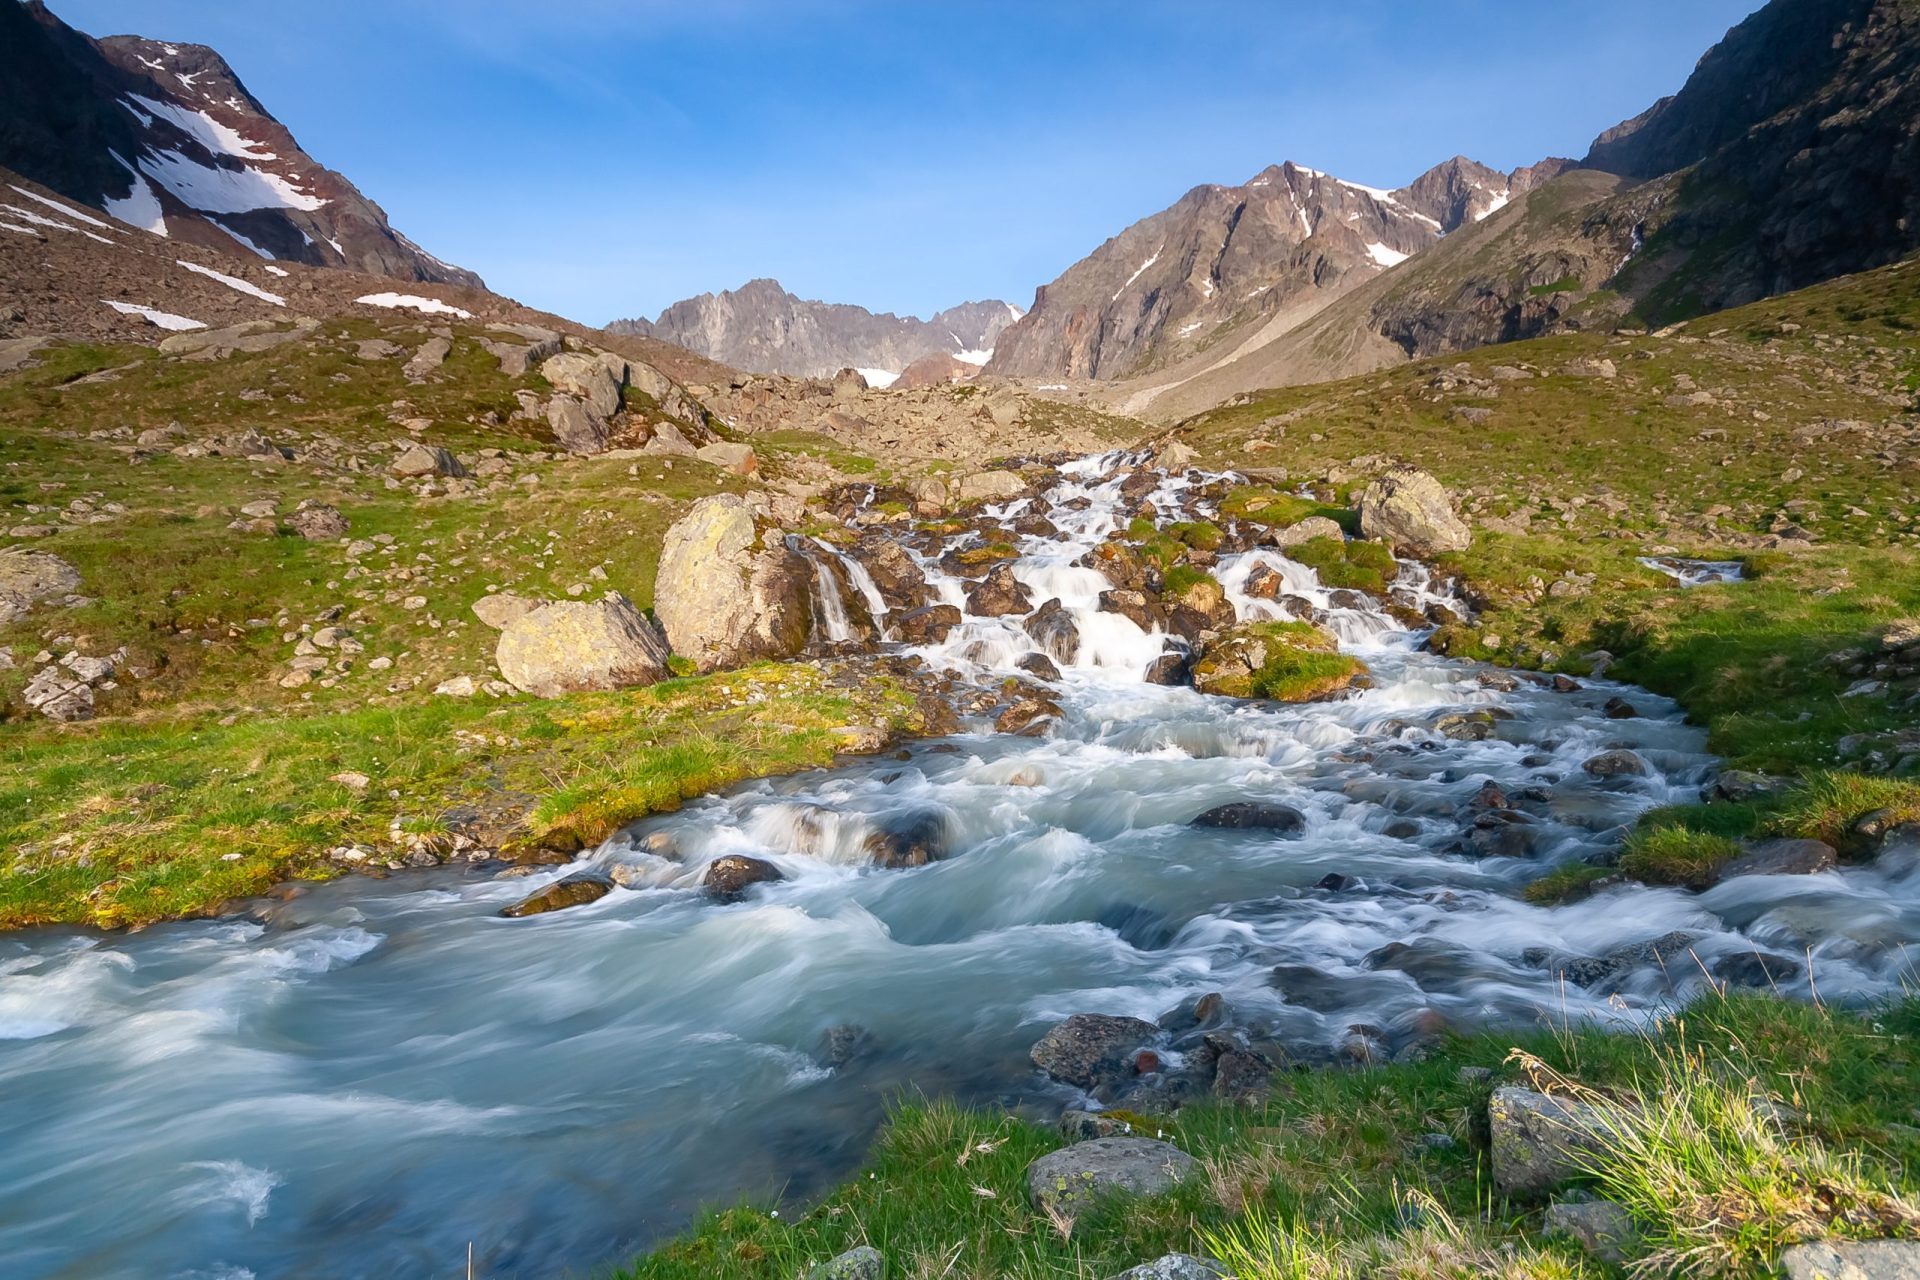 Ruisseau frais dans la rivière provenant des glaciers de la vallée près de Neue Regensburger huette, Alpes tyroliennes de Stubai, Autriche